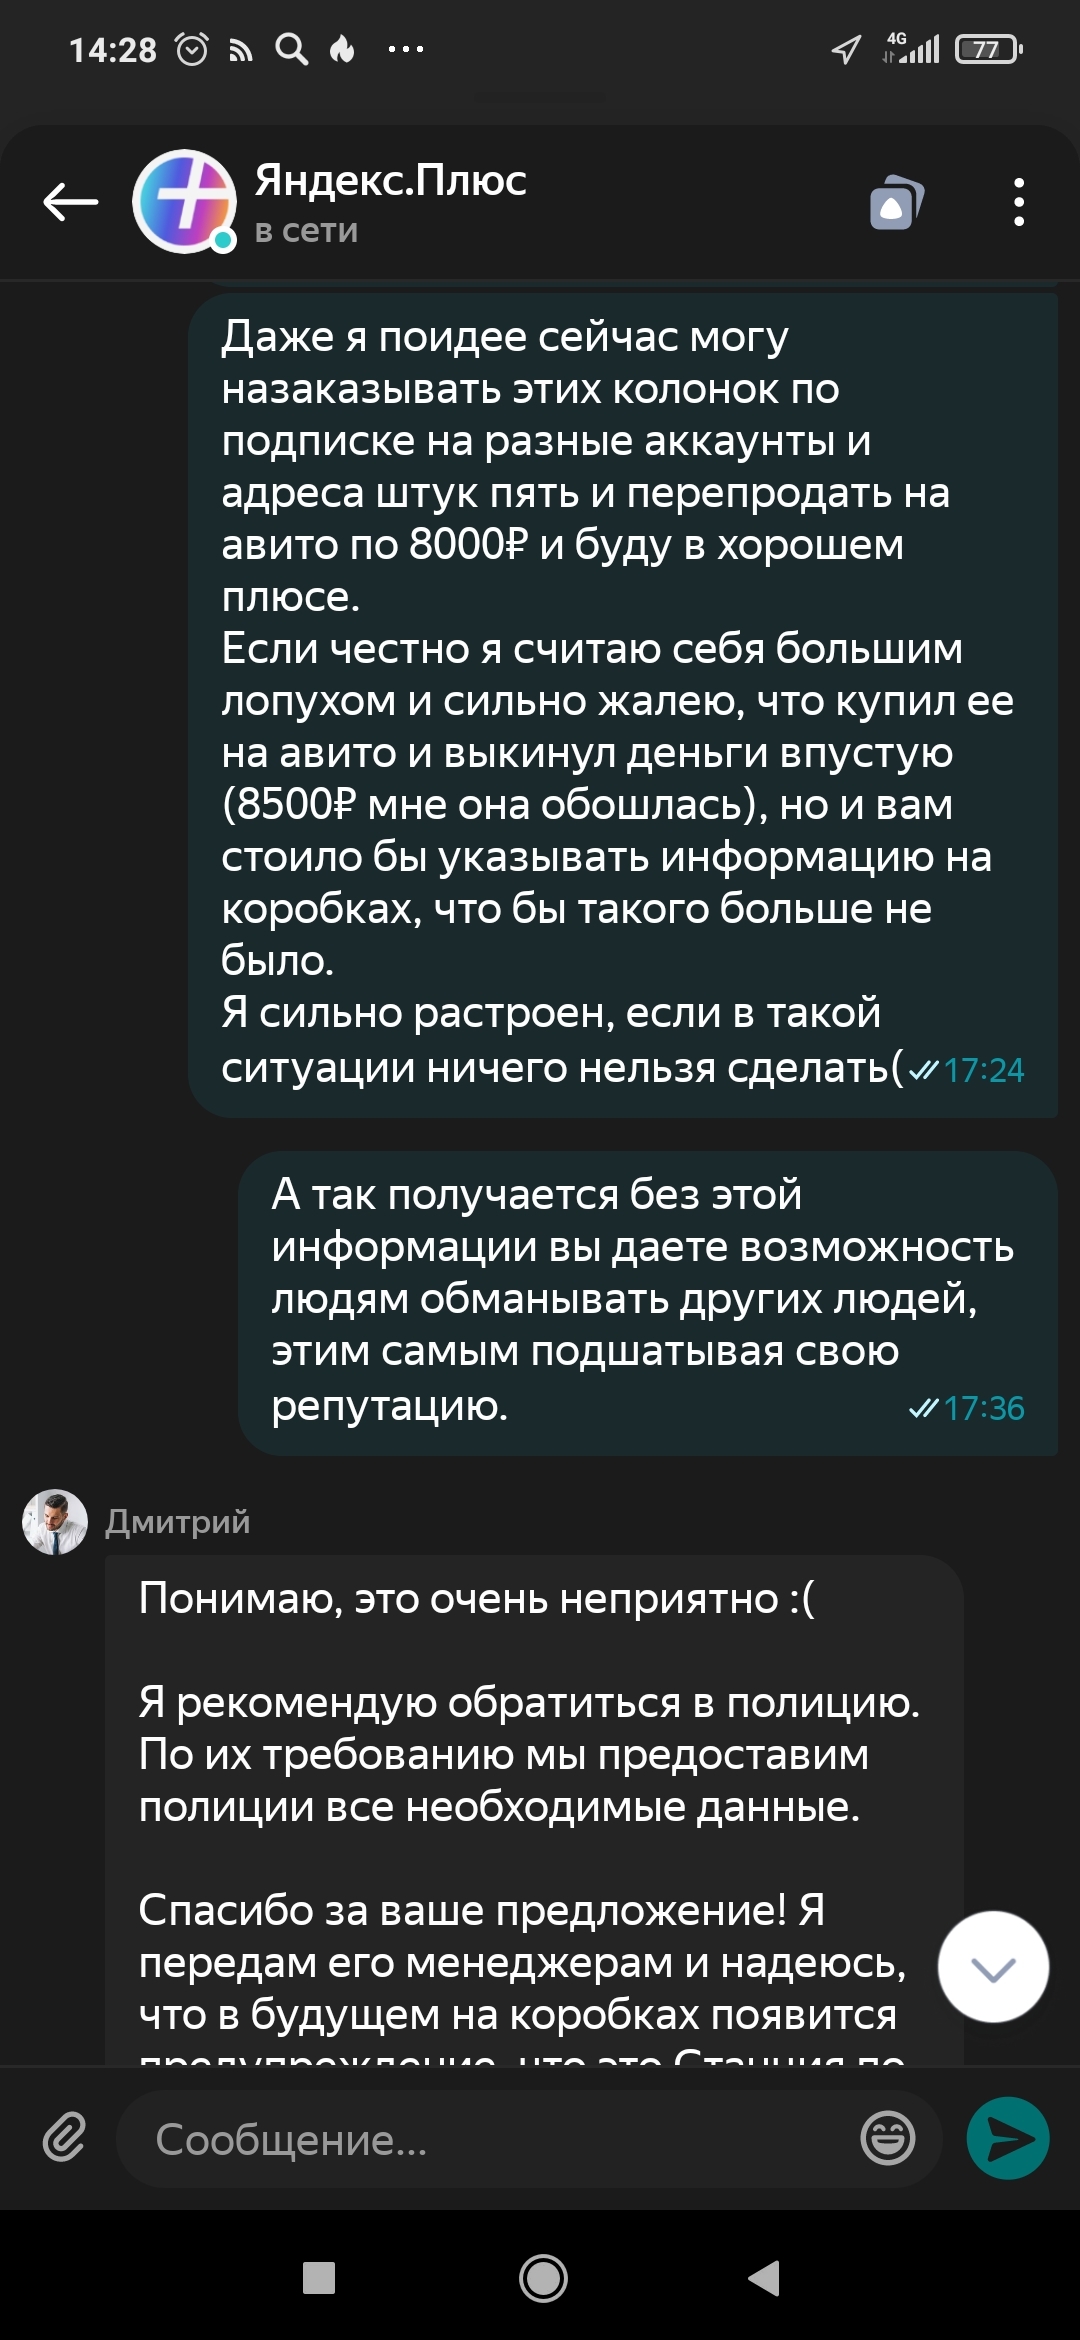 Как восстановить пароль Яндекс.Почты: подробная инструкция